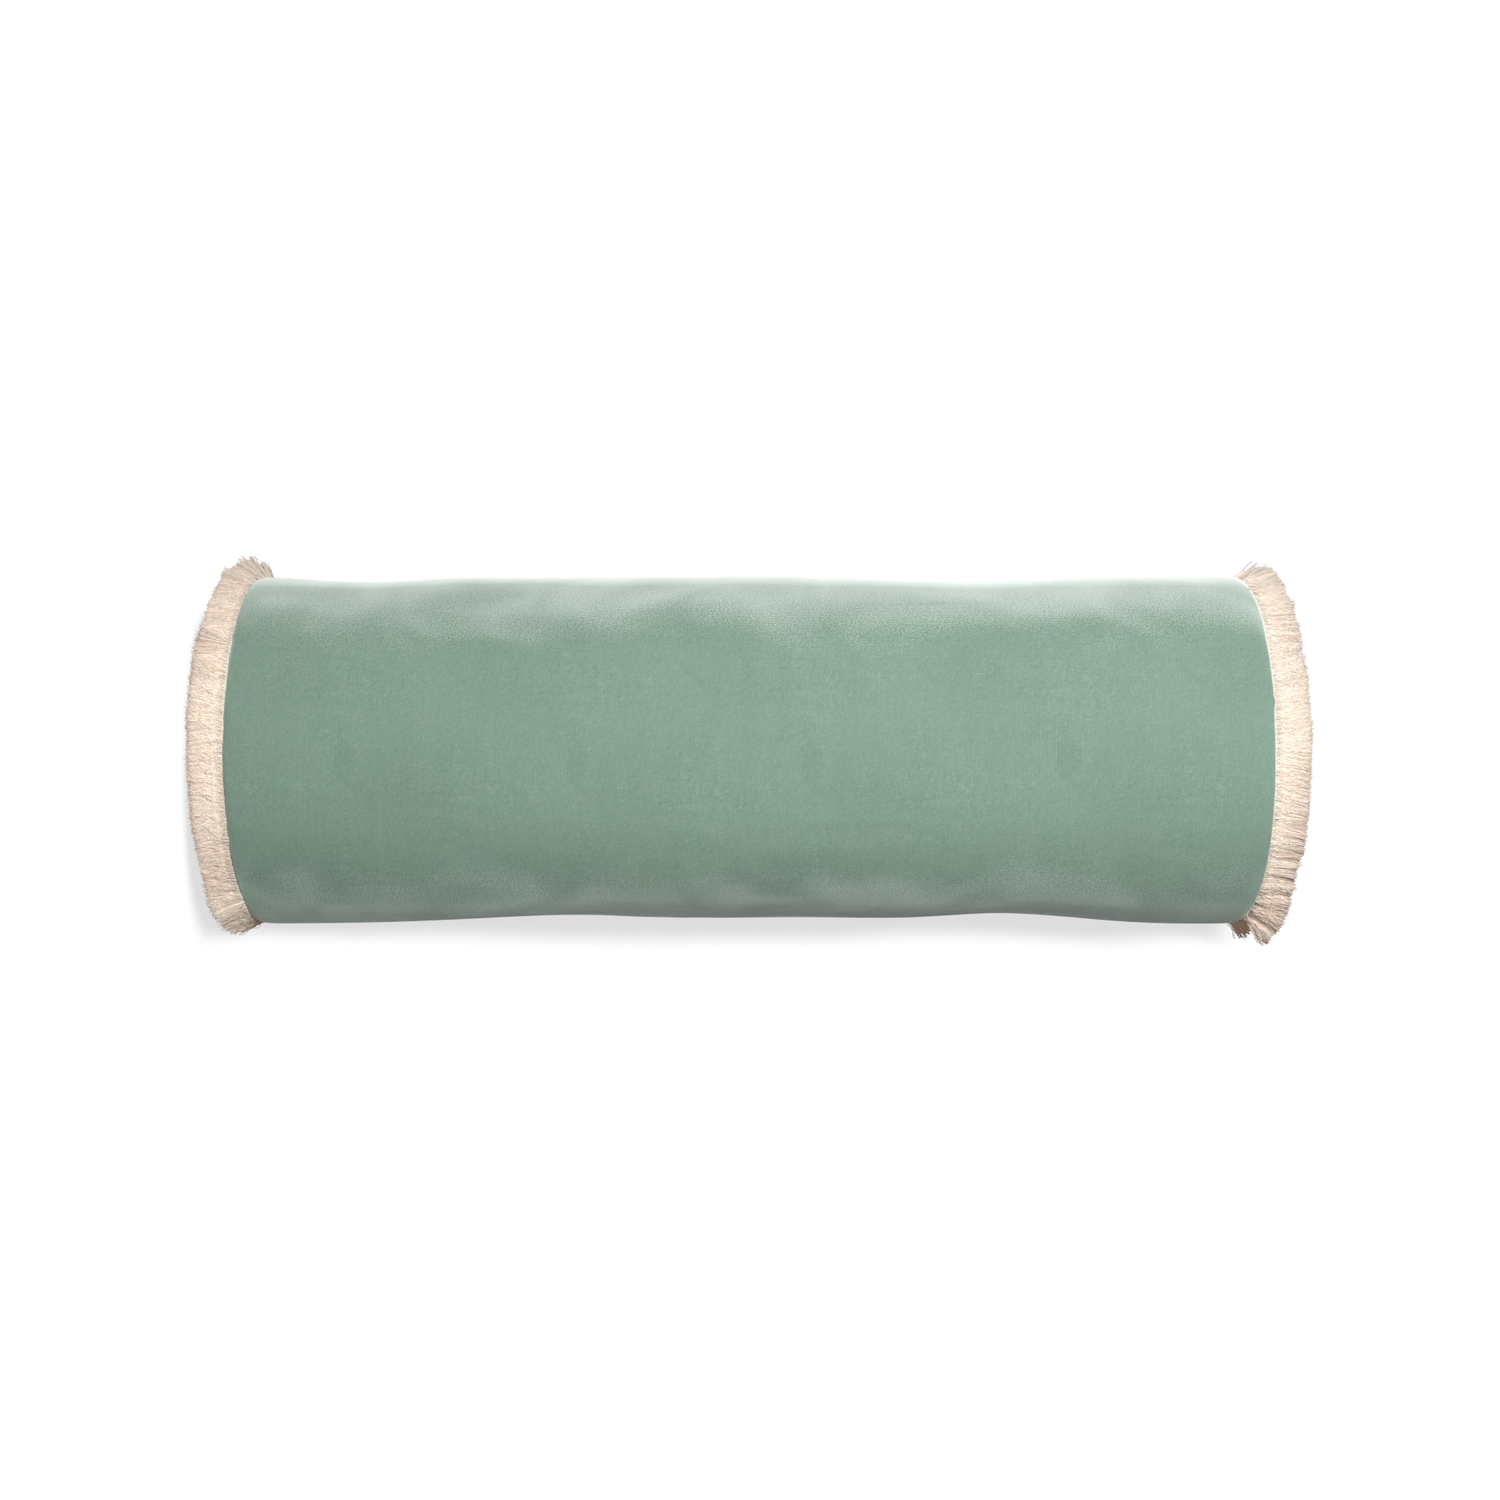 bolster blue green velvet pillow with cream fringe